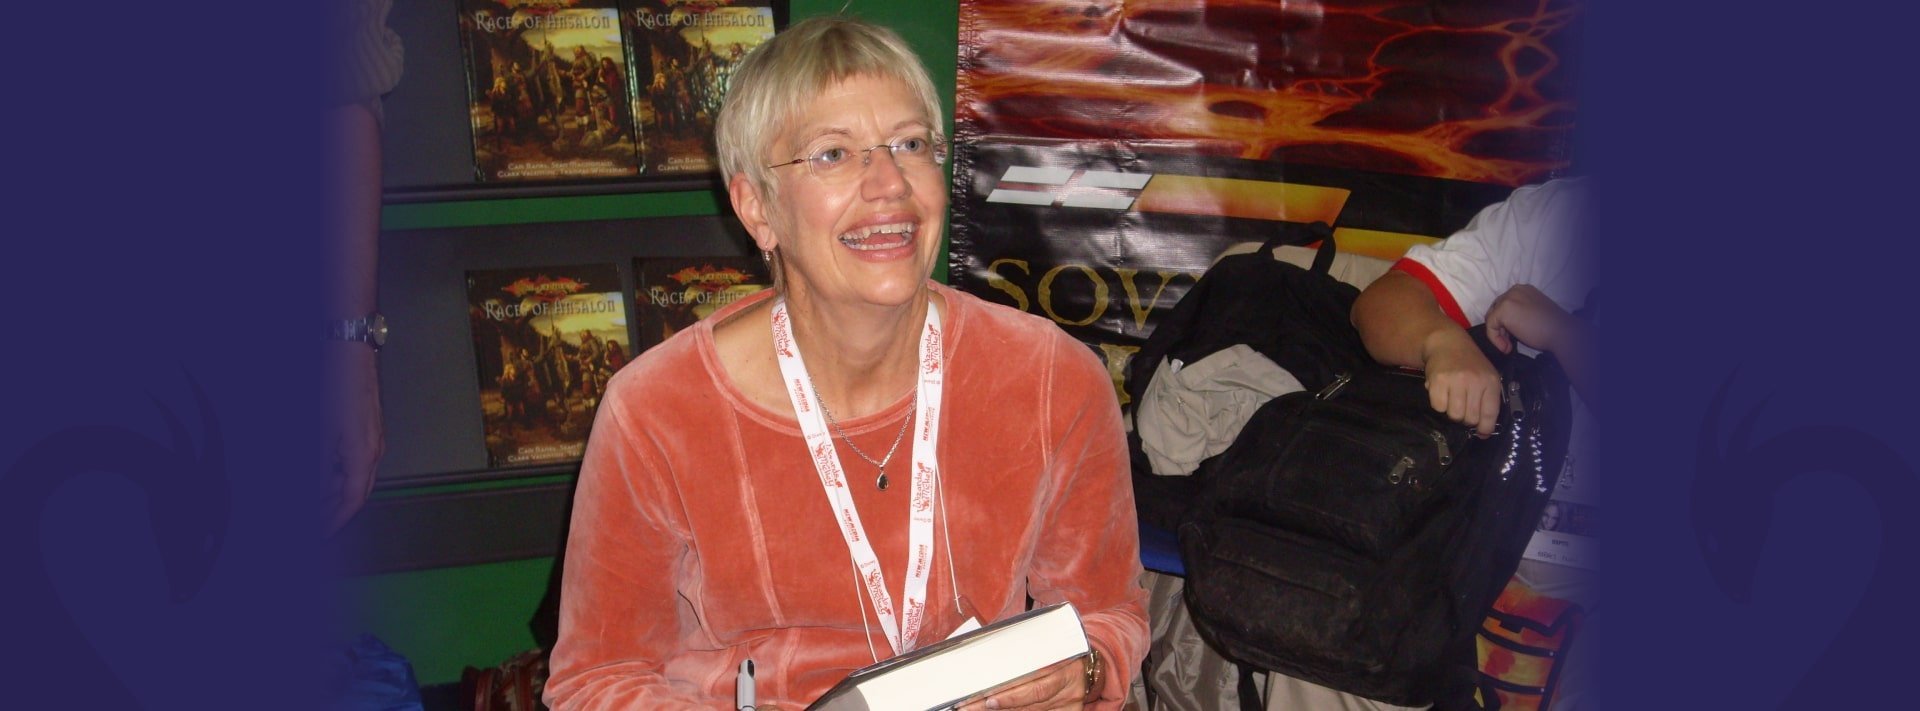 Margaret Weis, escritora de fantasía